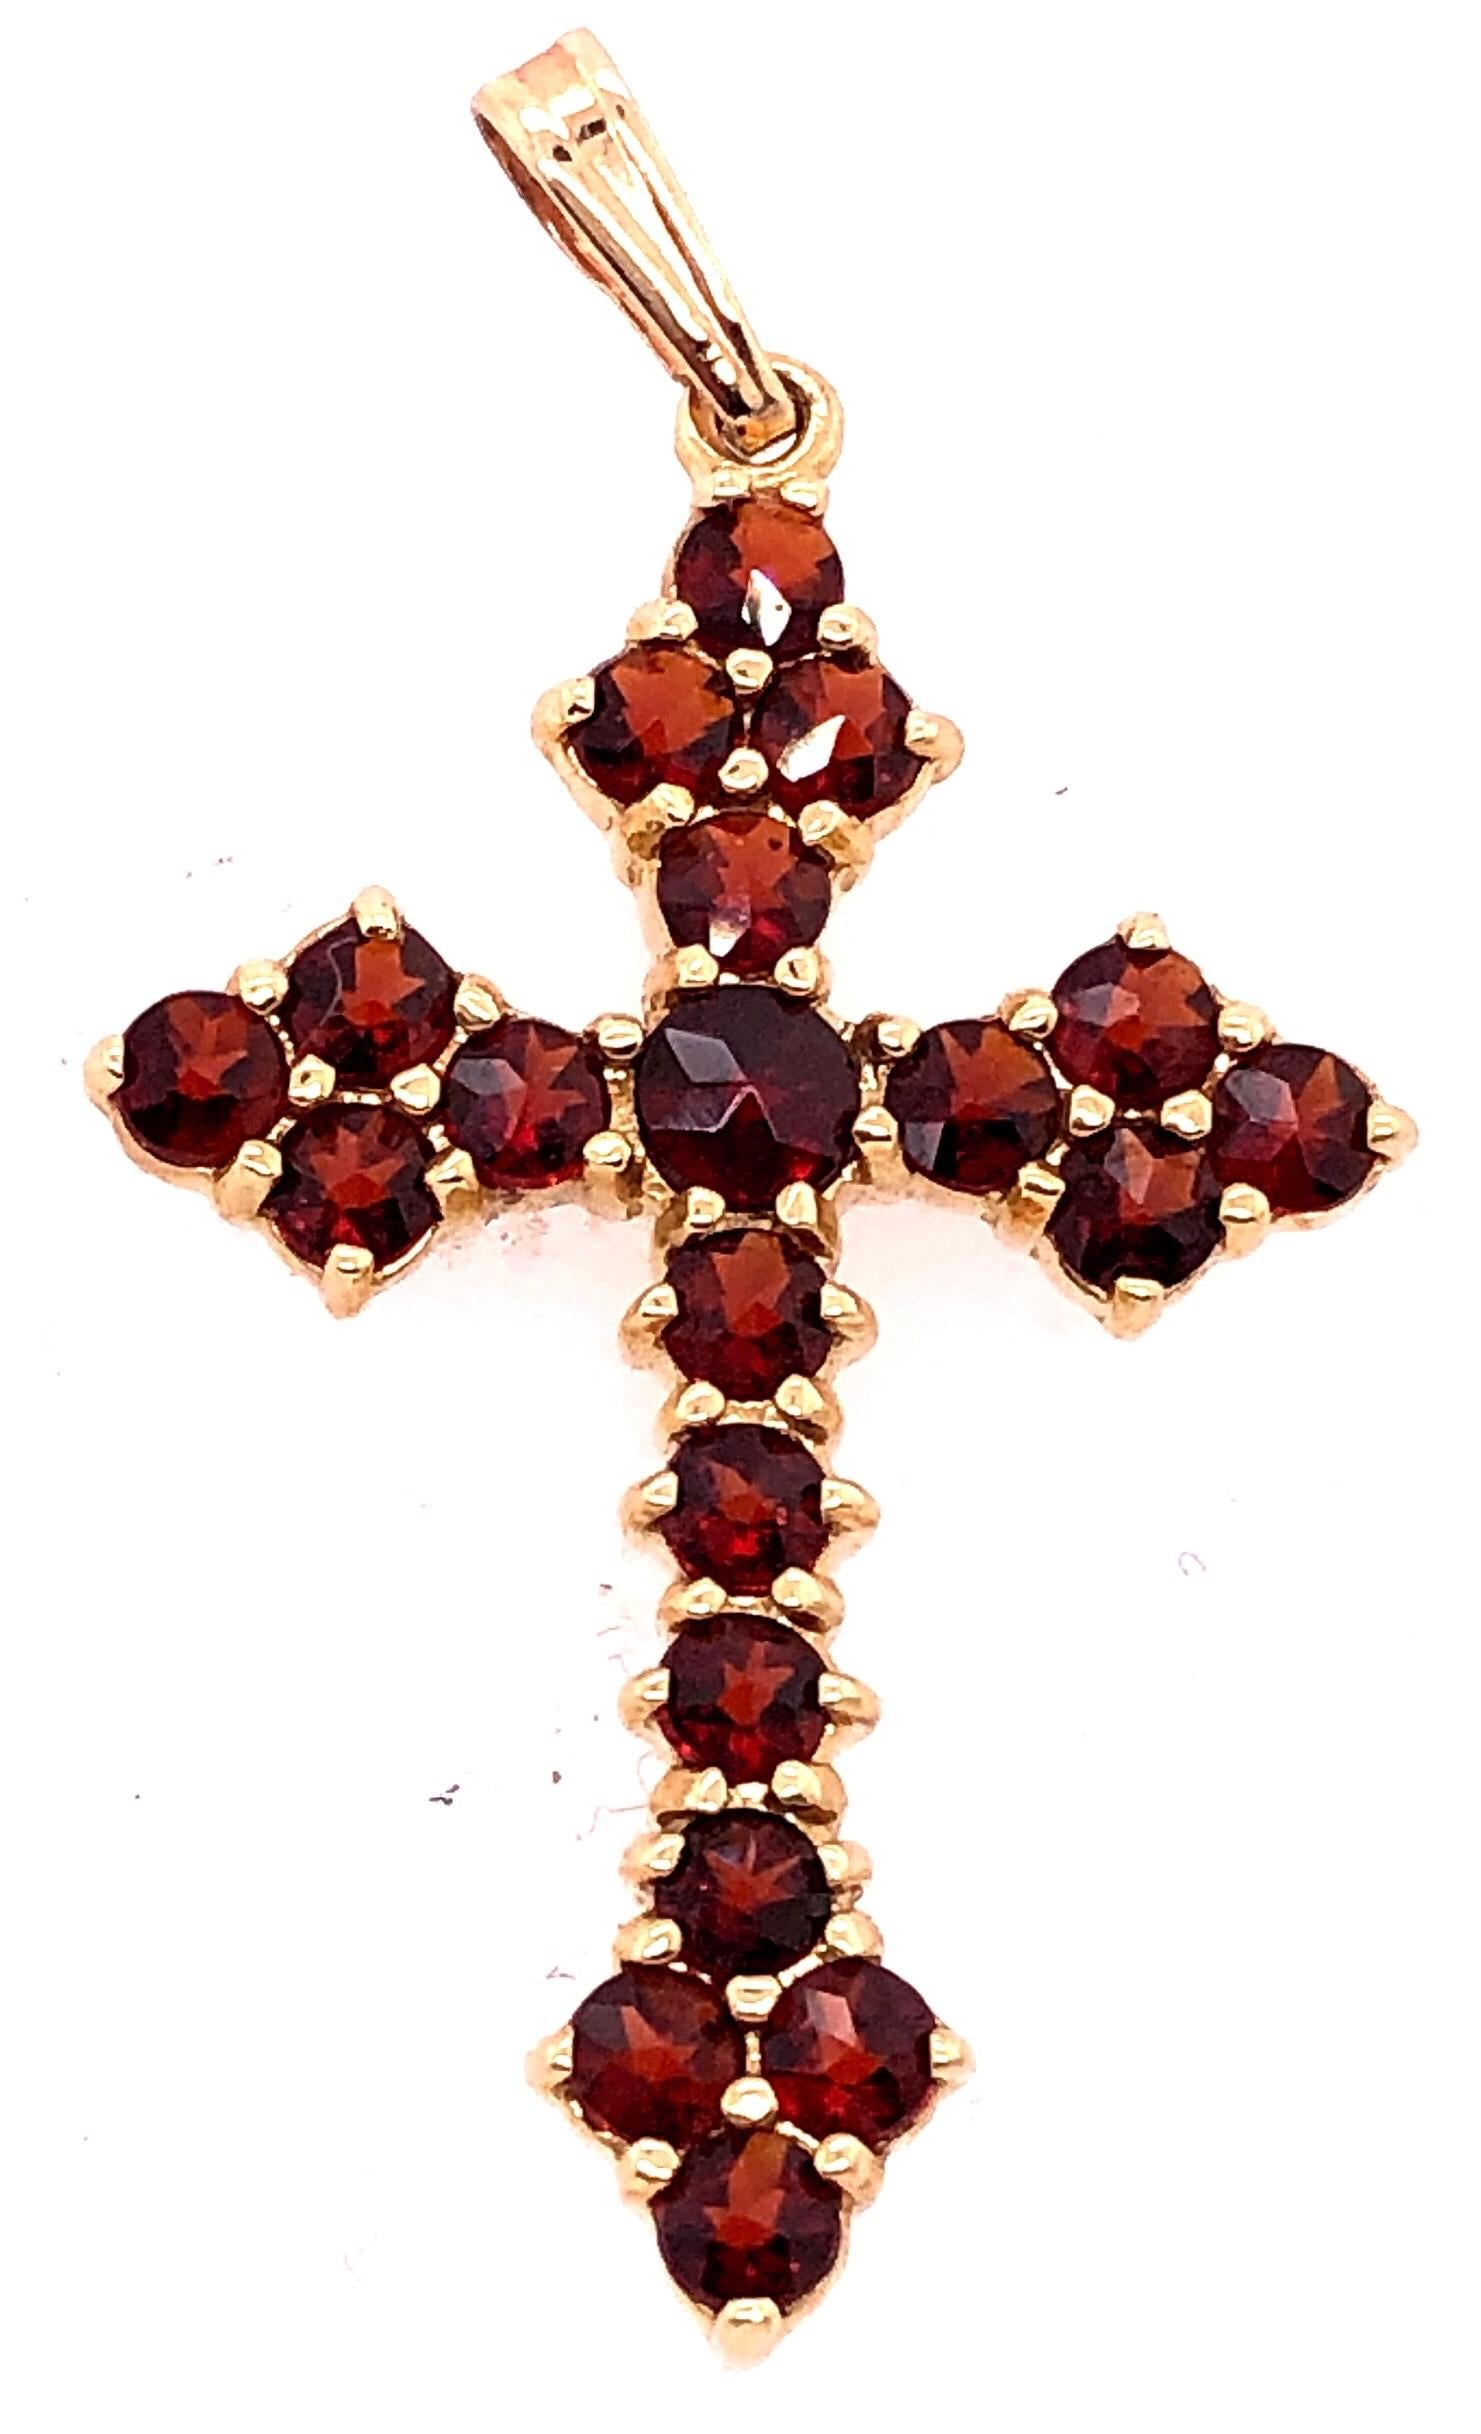 Pendentif religieux / Crucifix en or jaune 14 carats avec pierres semi-précieuses.
Poids total : 3 grammes.